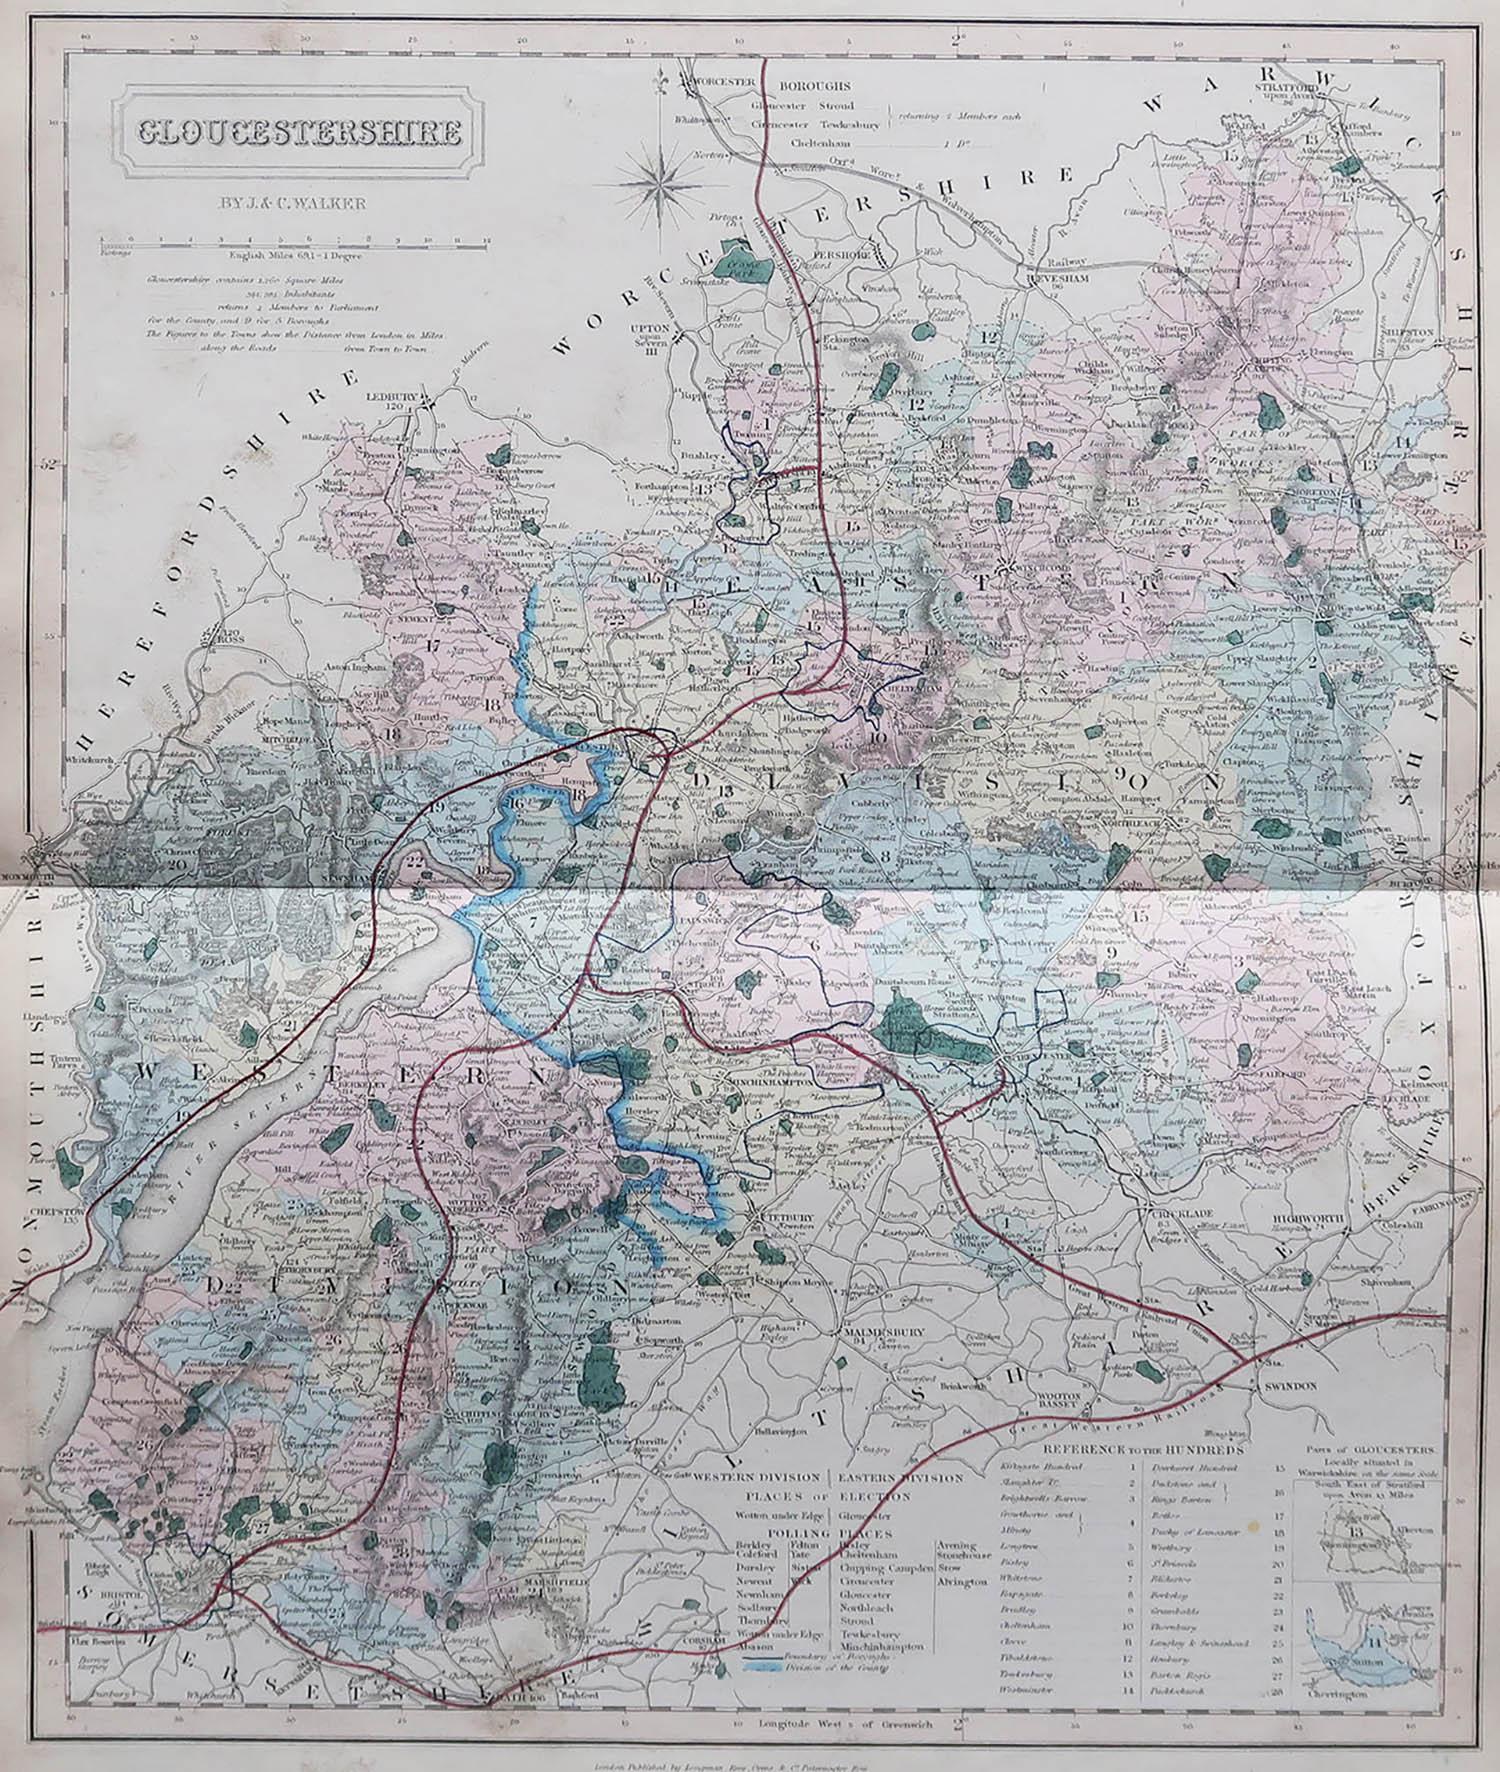 Großartige Karte von Gloucestershire

Original Farbe

Von J & C Walker

Veröffentlicht von Longman, Rees, Orme, Brown & Co. 1851

Ungerahmt.




